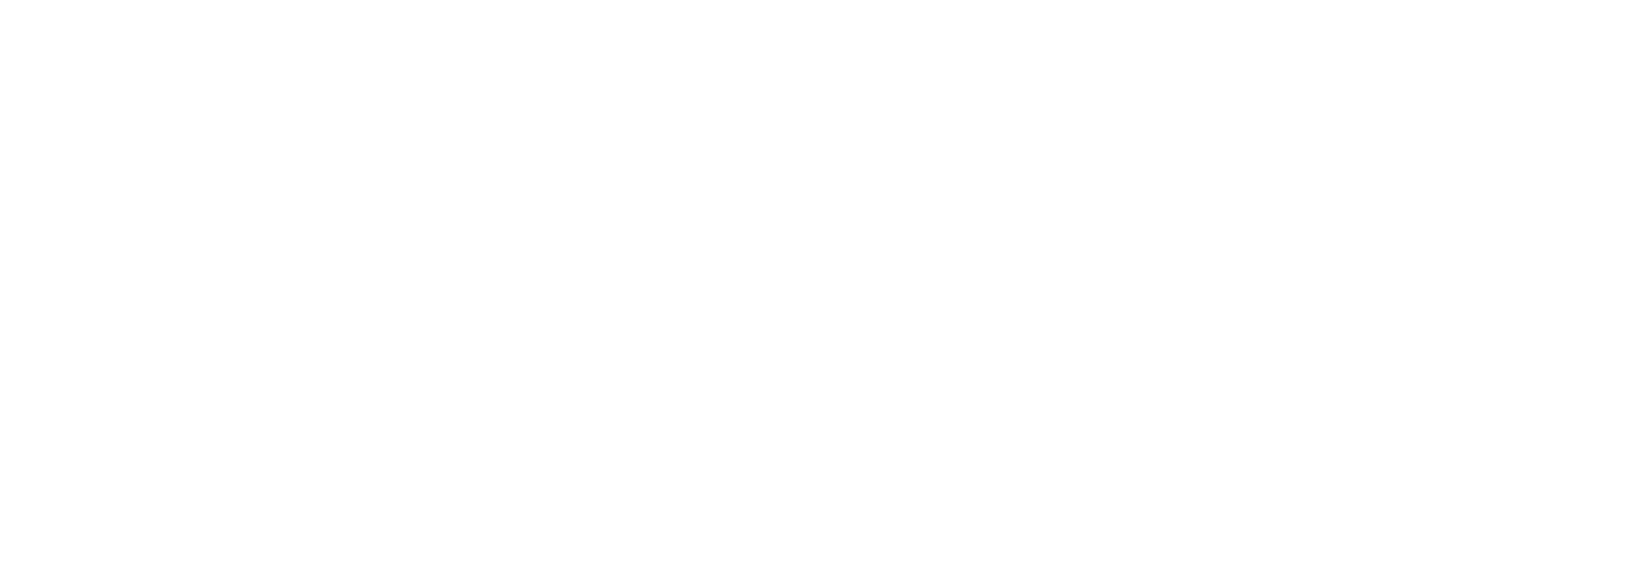 widex white logo